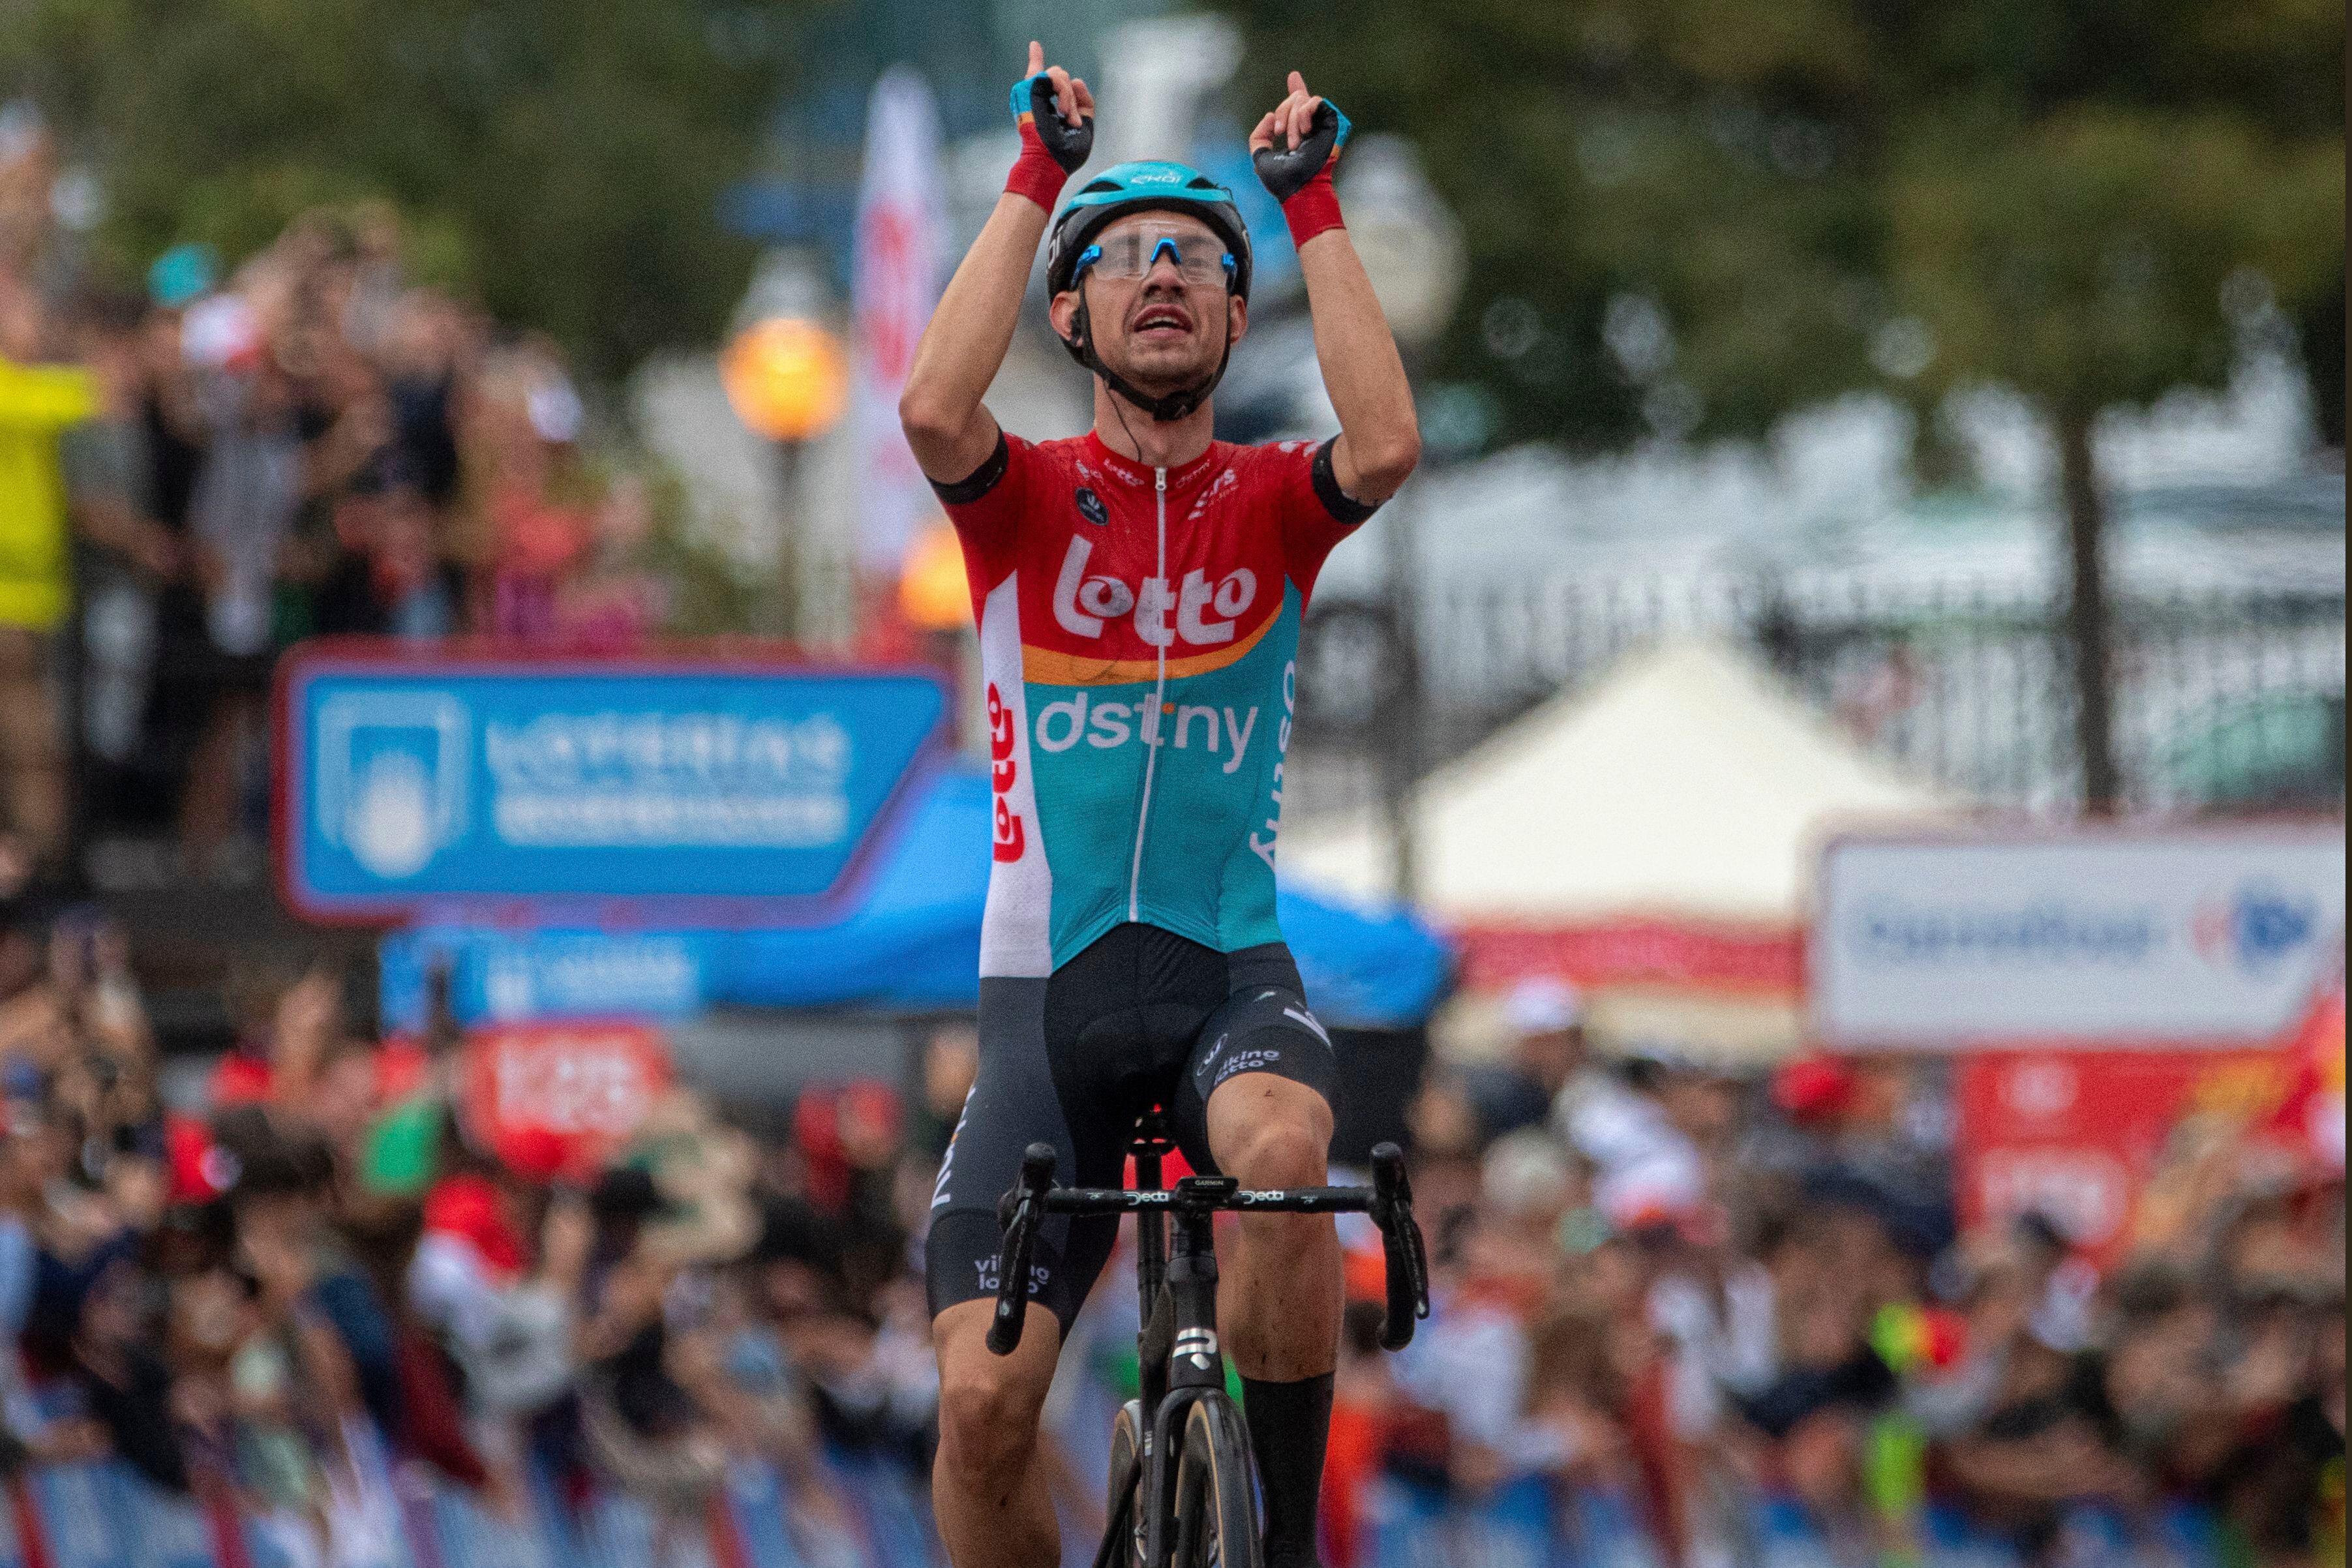 El danés Andreas Kron (Lotto Dstny) celebra su victoria en la segunda etapa de la Vuelta a España. Lorena Sopena/Europa Press vía AP